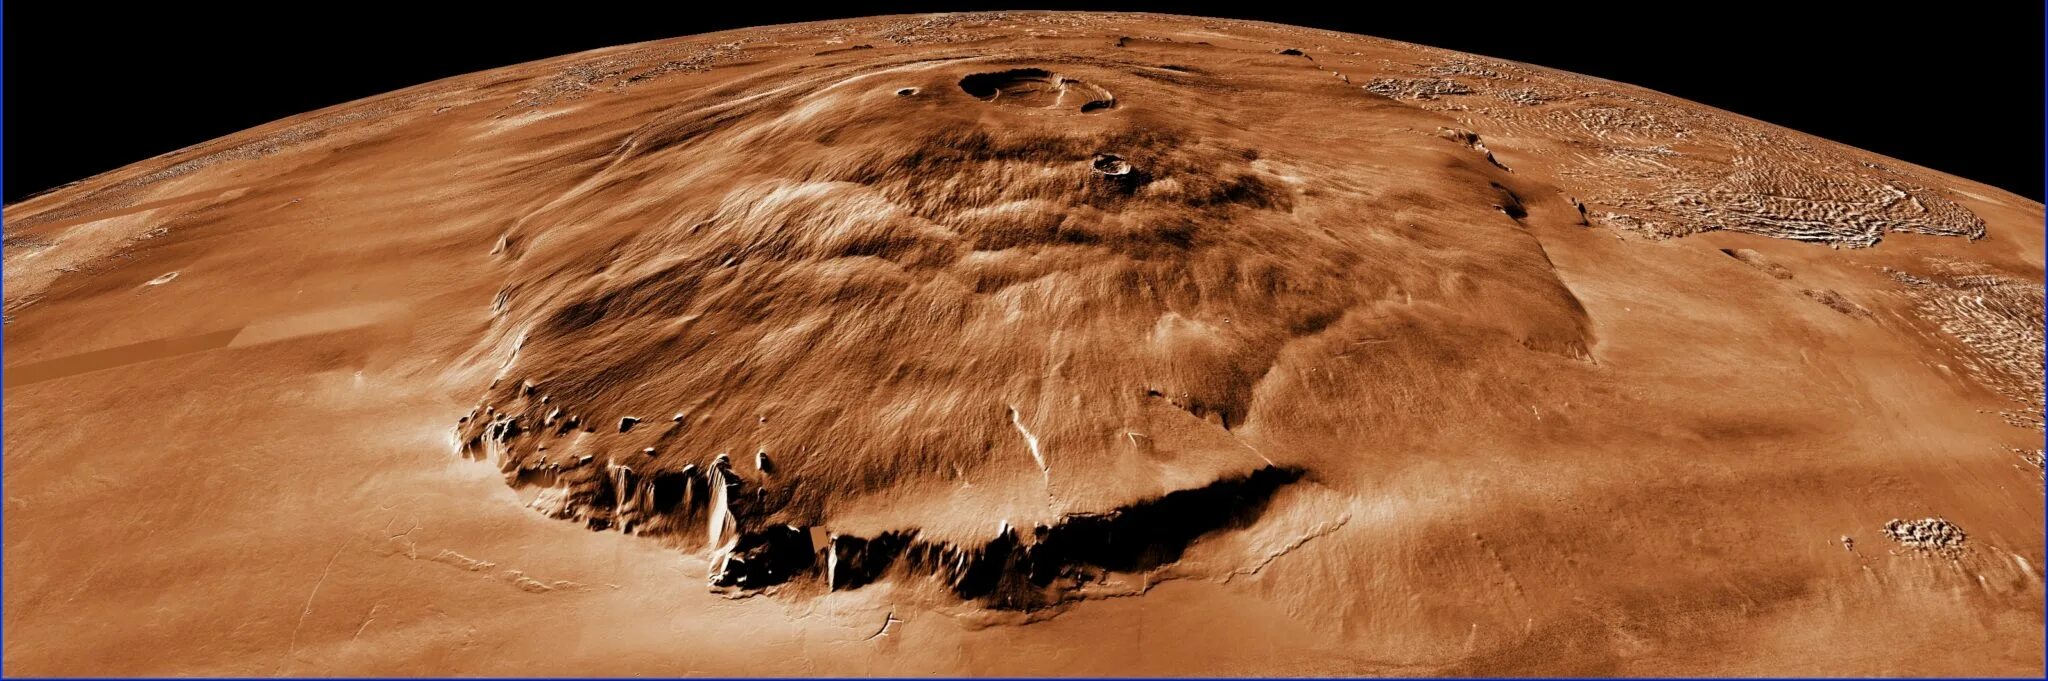 Самый большой вулкан солнечной системы находится. Гора Олимп на Марсе. Марсианский потухший вулкан гора Олимп. Олимпус гора на Марсе. Вулкан Олимп на Марсе.